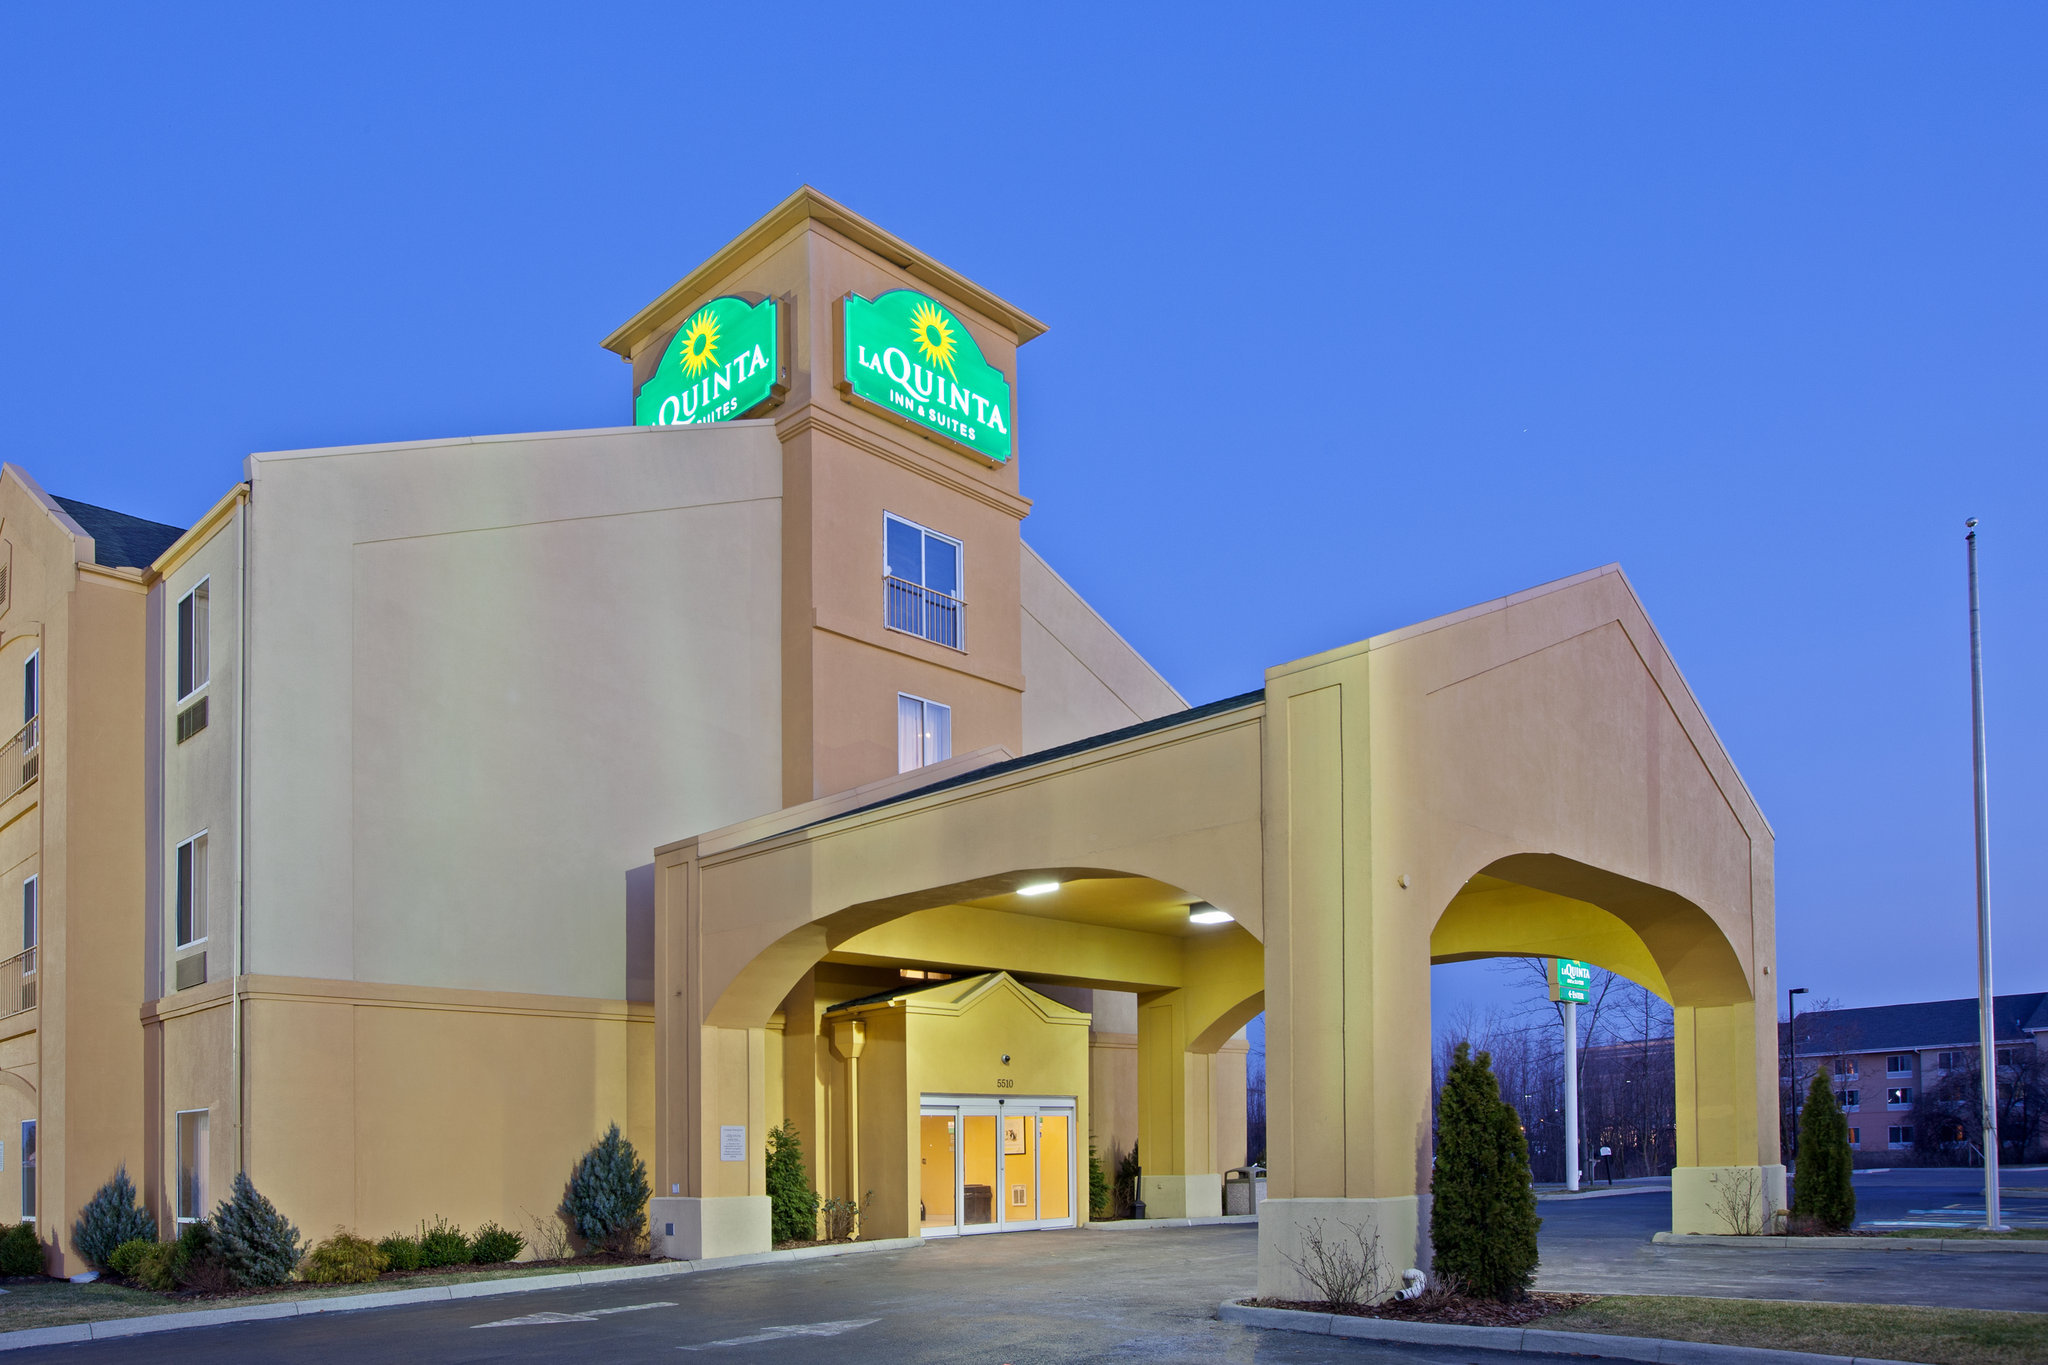 Photo of La Quinta Inn & Suites Columbus West - Hilliard, Columbus, OH